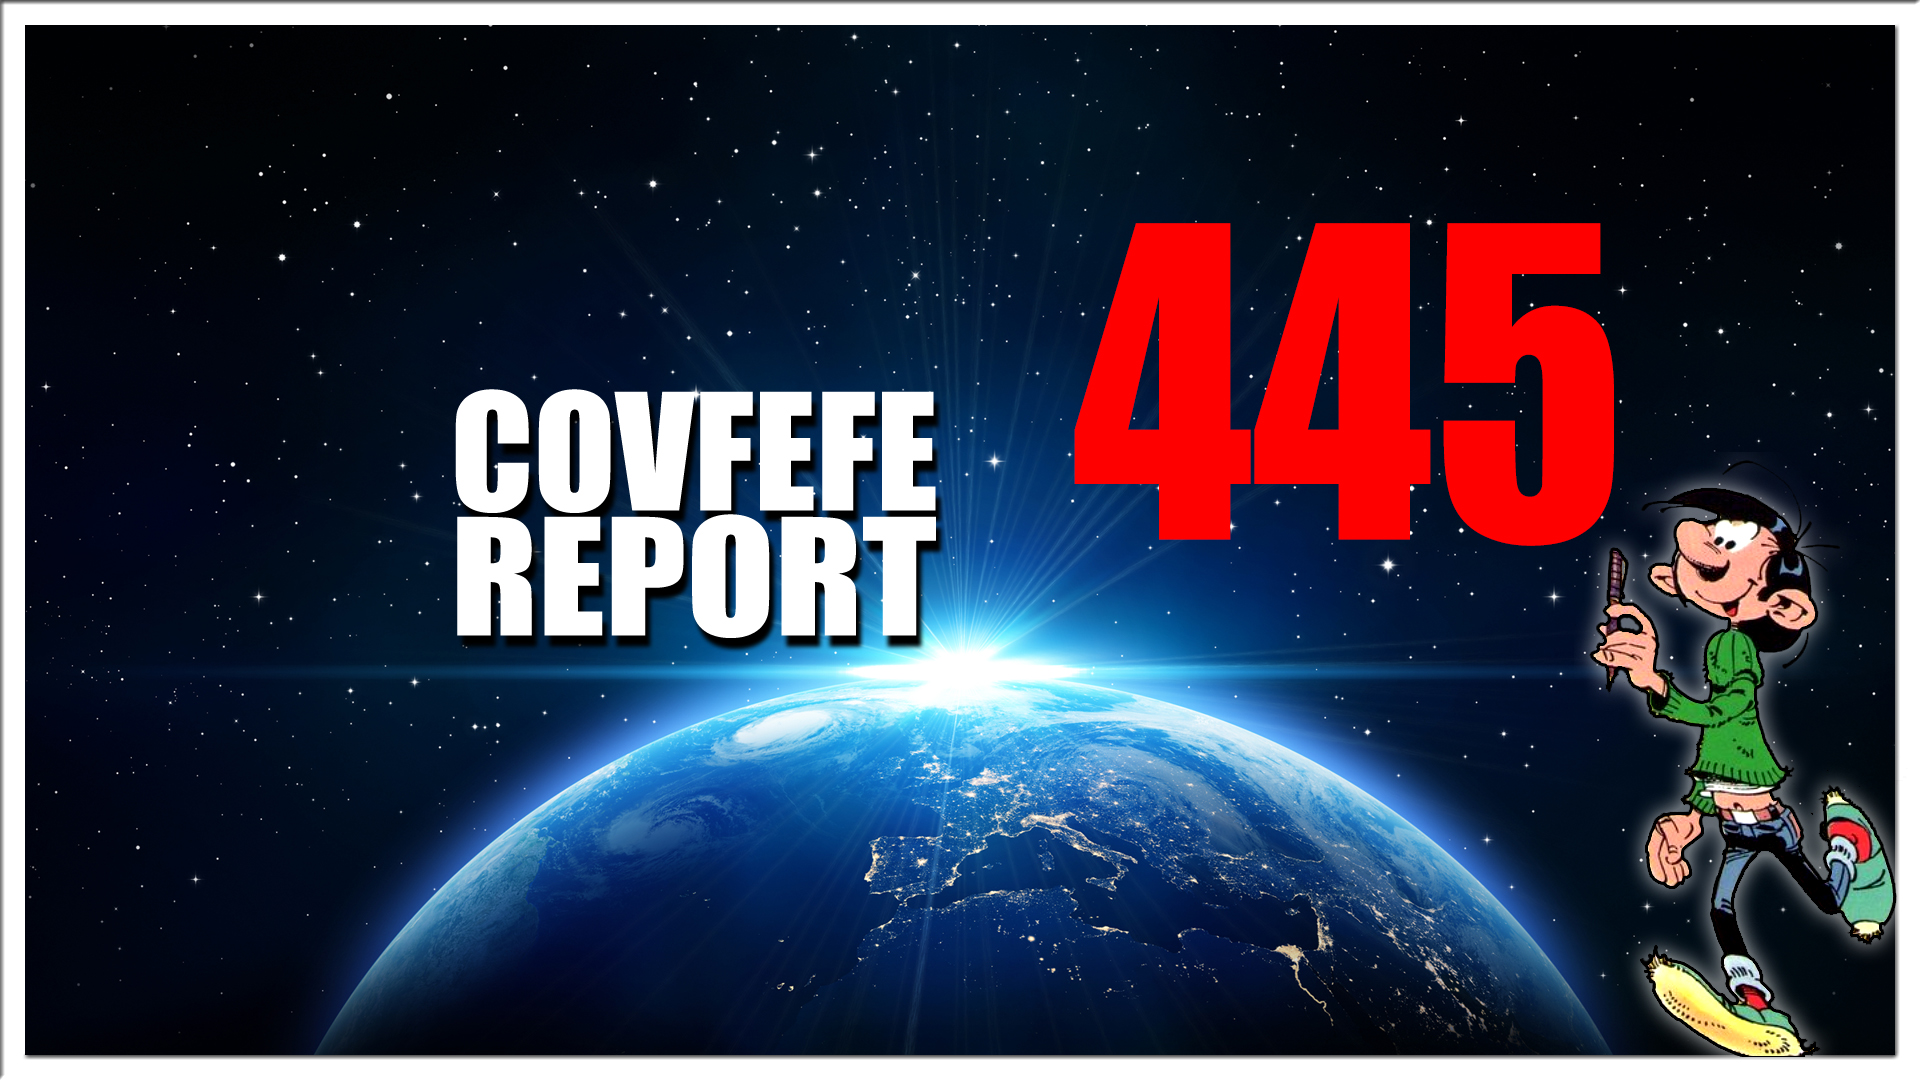 Covfefe Report 445. John Kerry is over, Demo's in het land, Politie verziekt feest